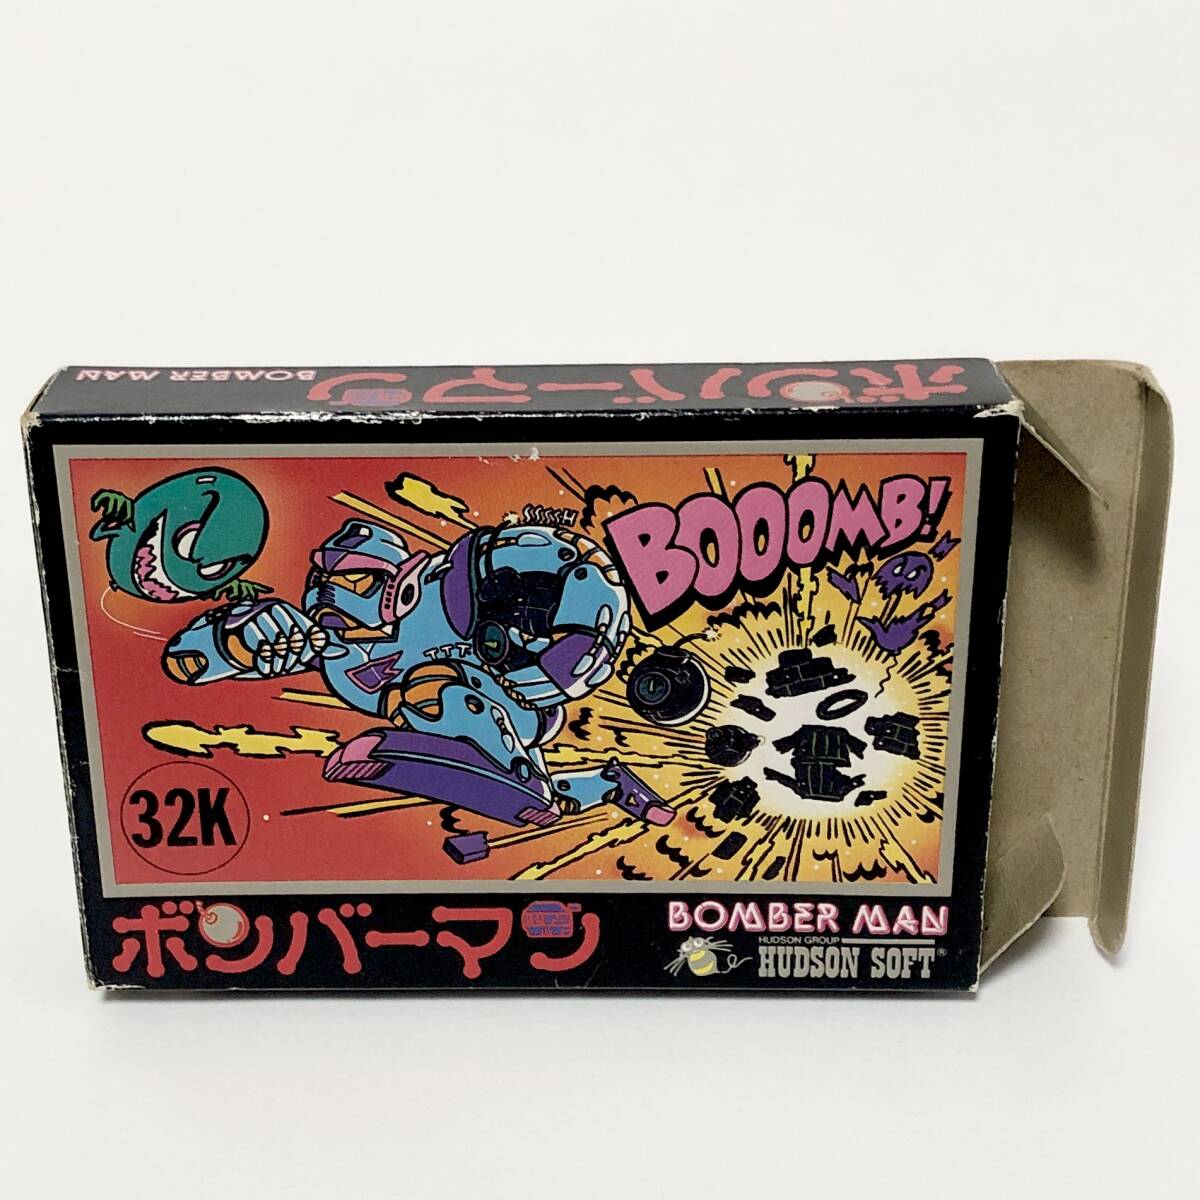 ファミコン ボンバーマン 箱説付き 痛みあり ハドソン レトロゲーム Nintendo Famicom Bomber Man CIB Tested Hudson Soft_画像2